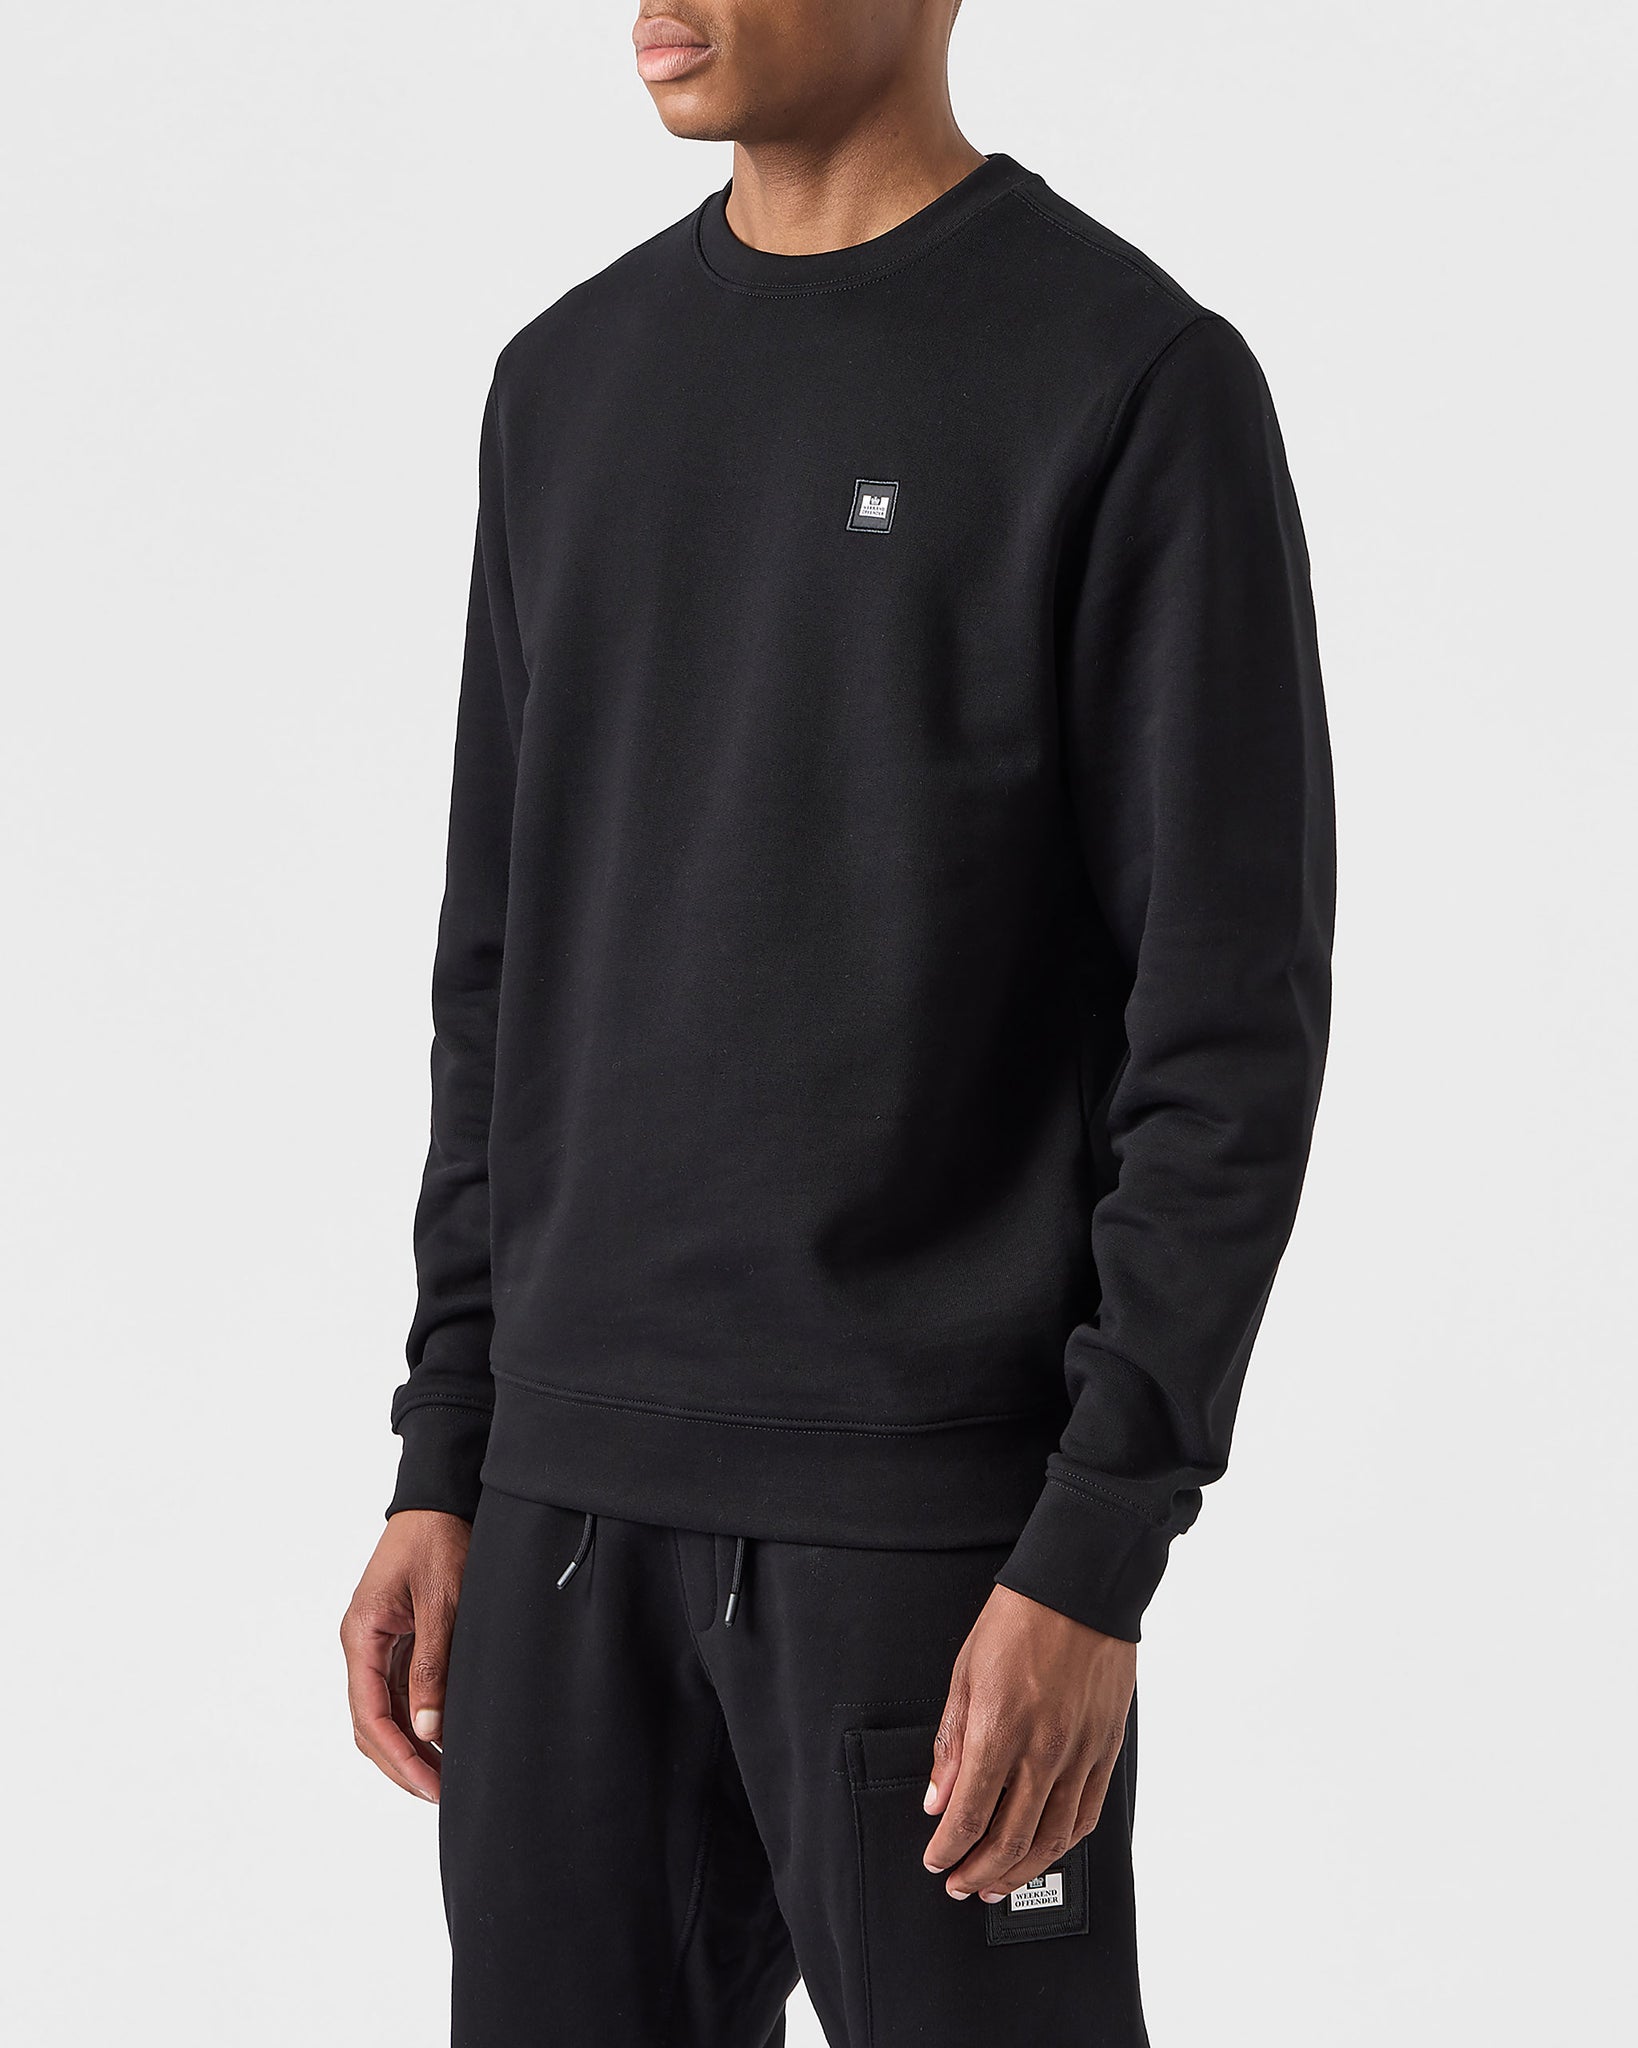 Ferrer Sweatshirt Black